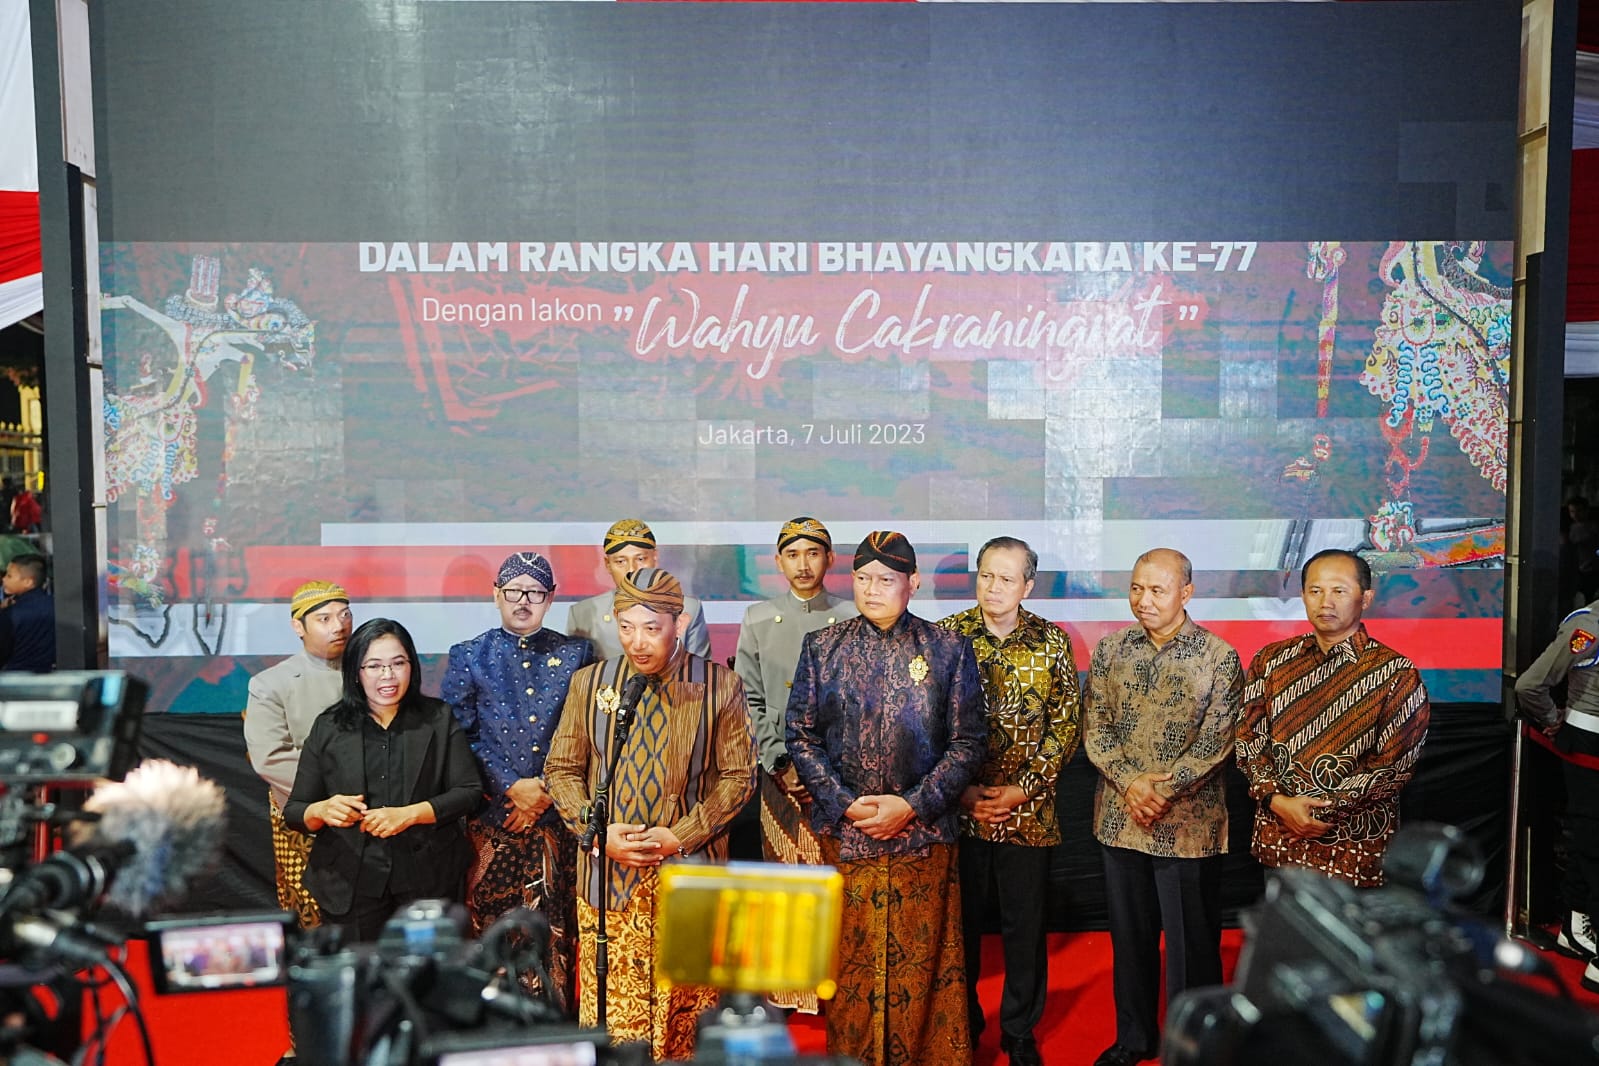 Kapolri Jenderal Listyo Sigit Prabowo menghadiri pagelaran Wayang Kulit dengan lakon Wahyu Cakraningrat di Lapangan Bhayangkara, Jakarta Selatan, Jumat, 7 Juli 2023, malam. (SinPo.id/Dok.Polri)